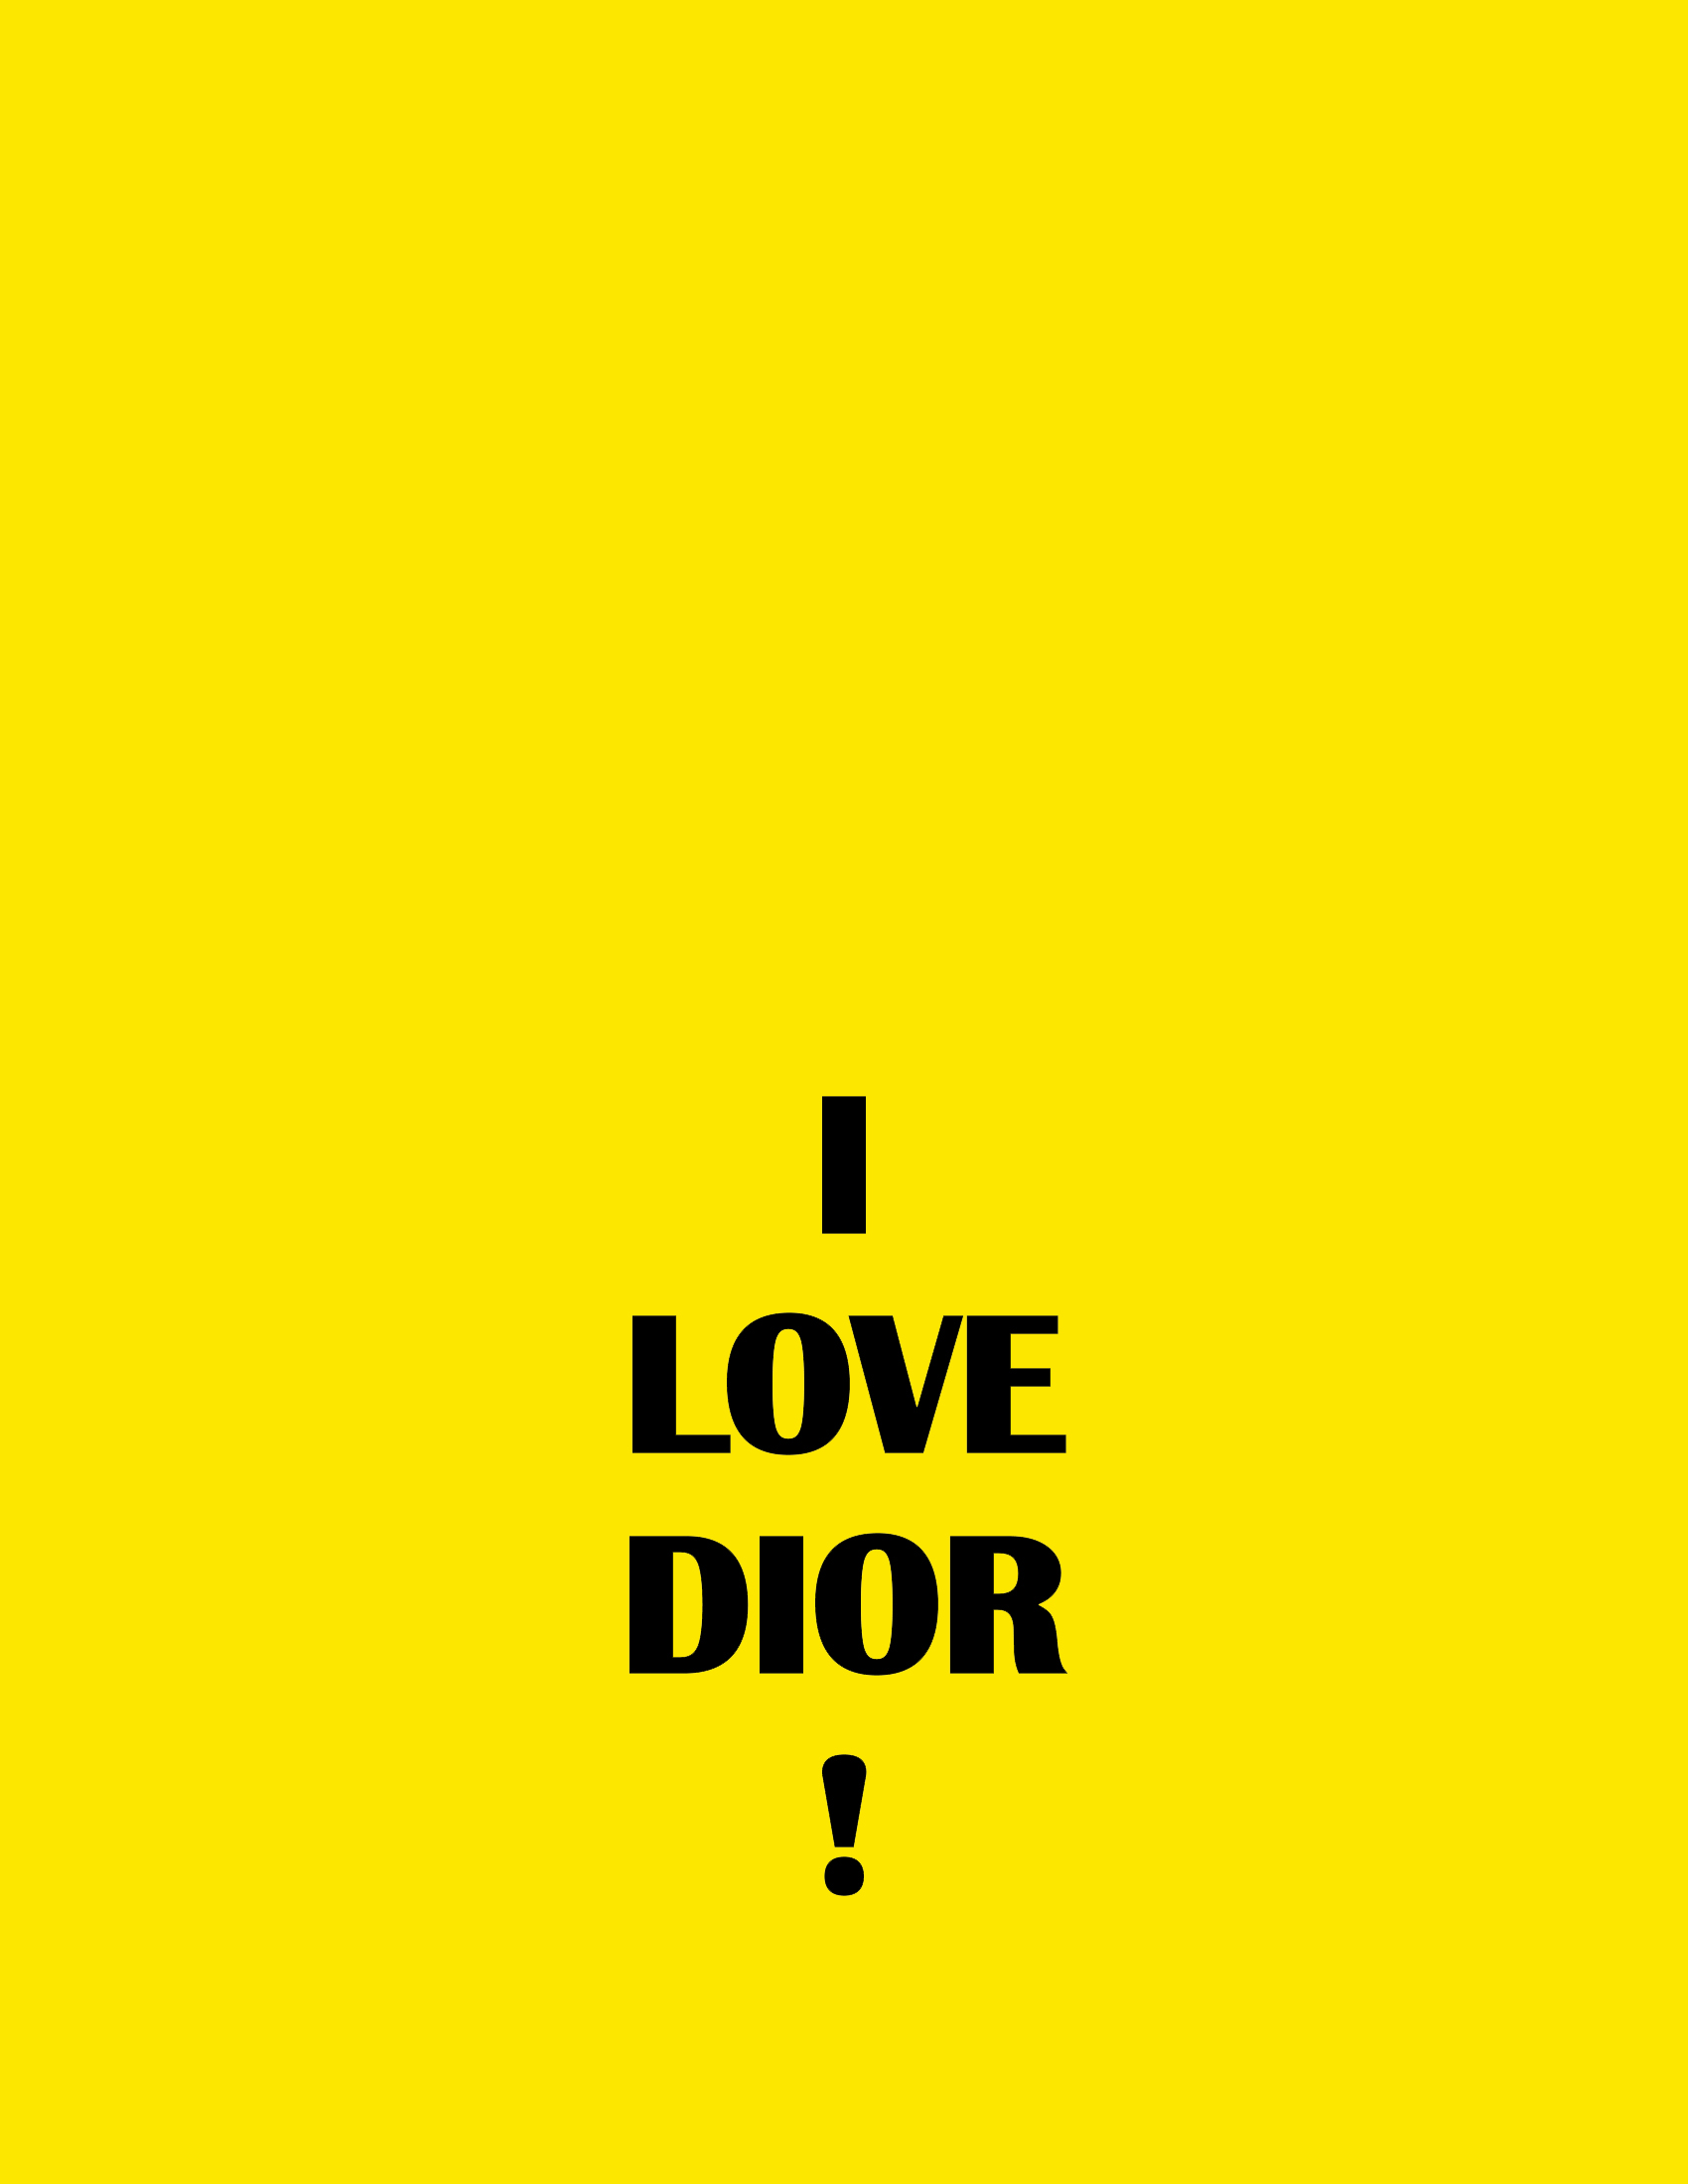 love dior